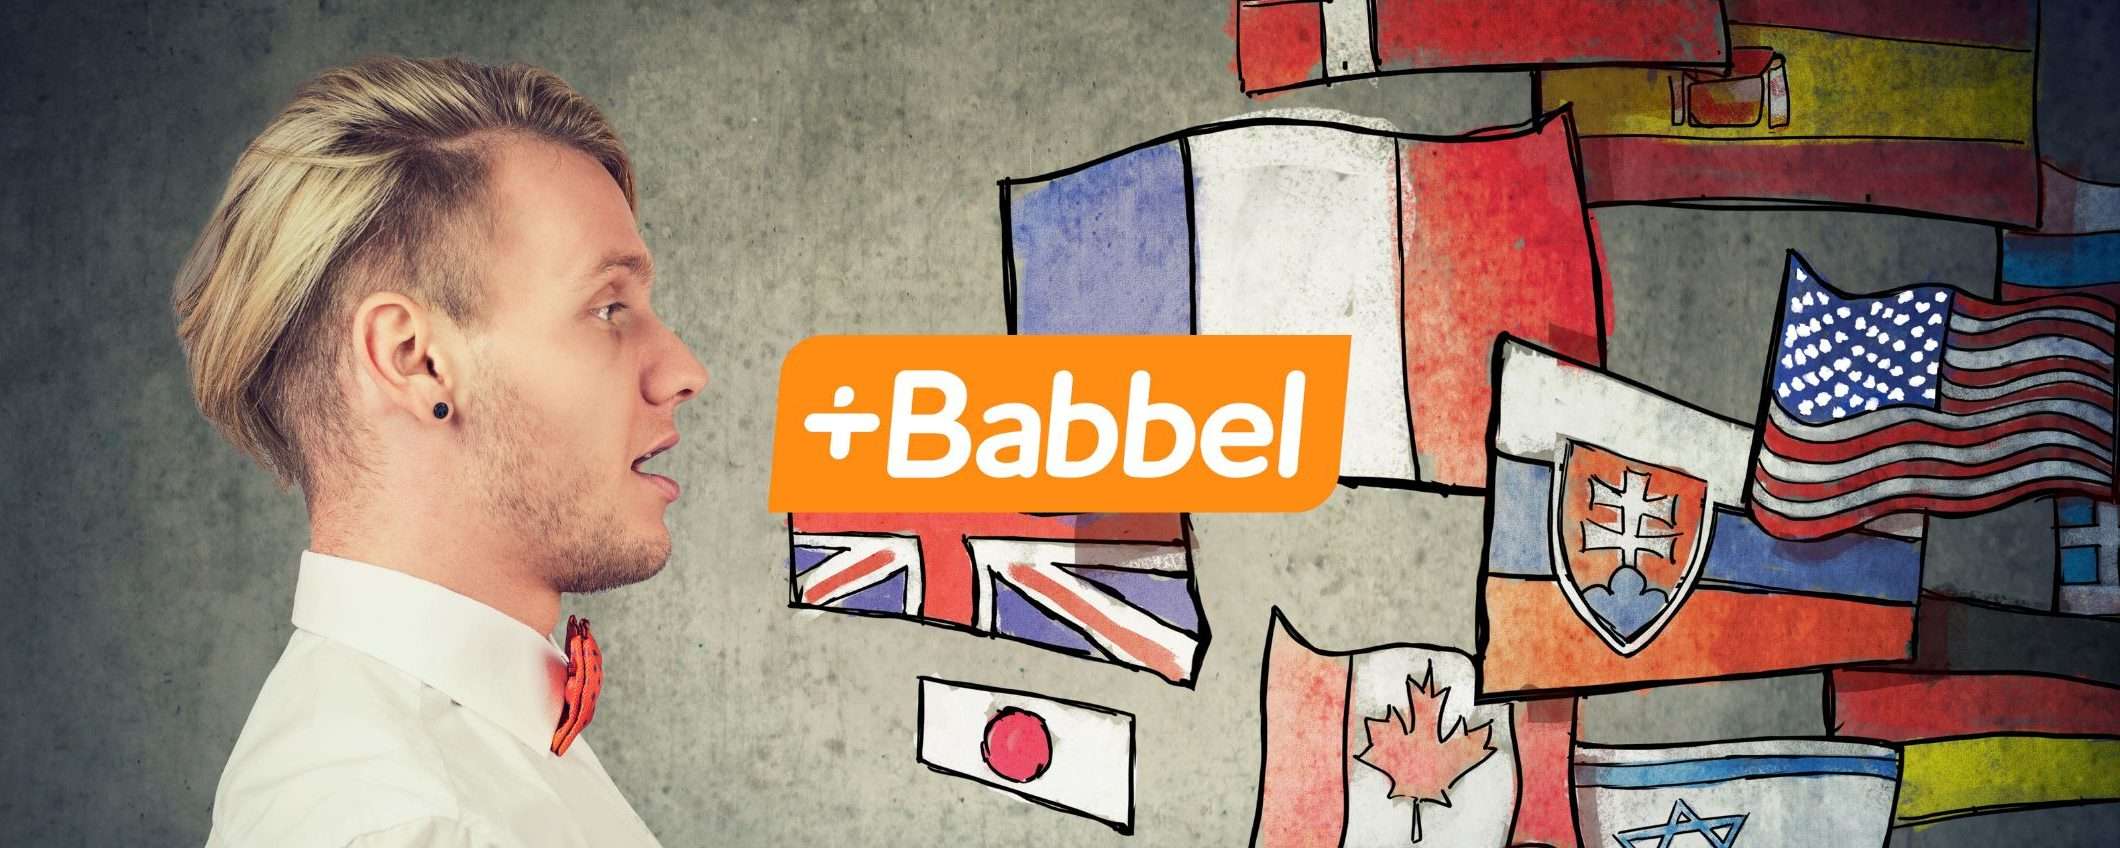 Babbel: parla una nuova lingua in 3 settimane